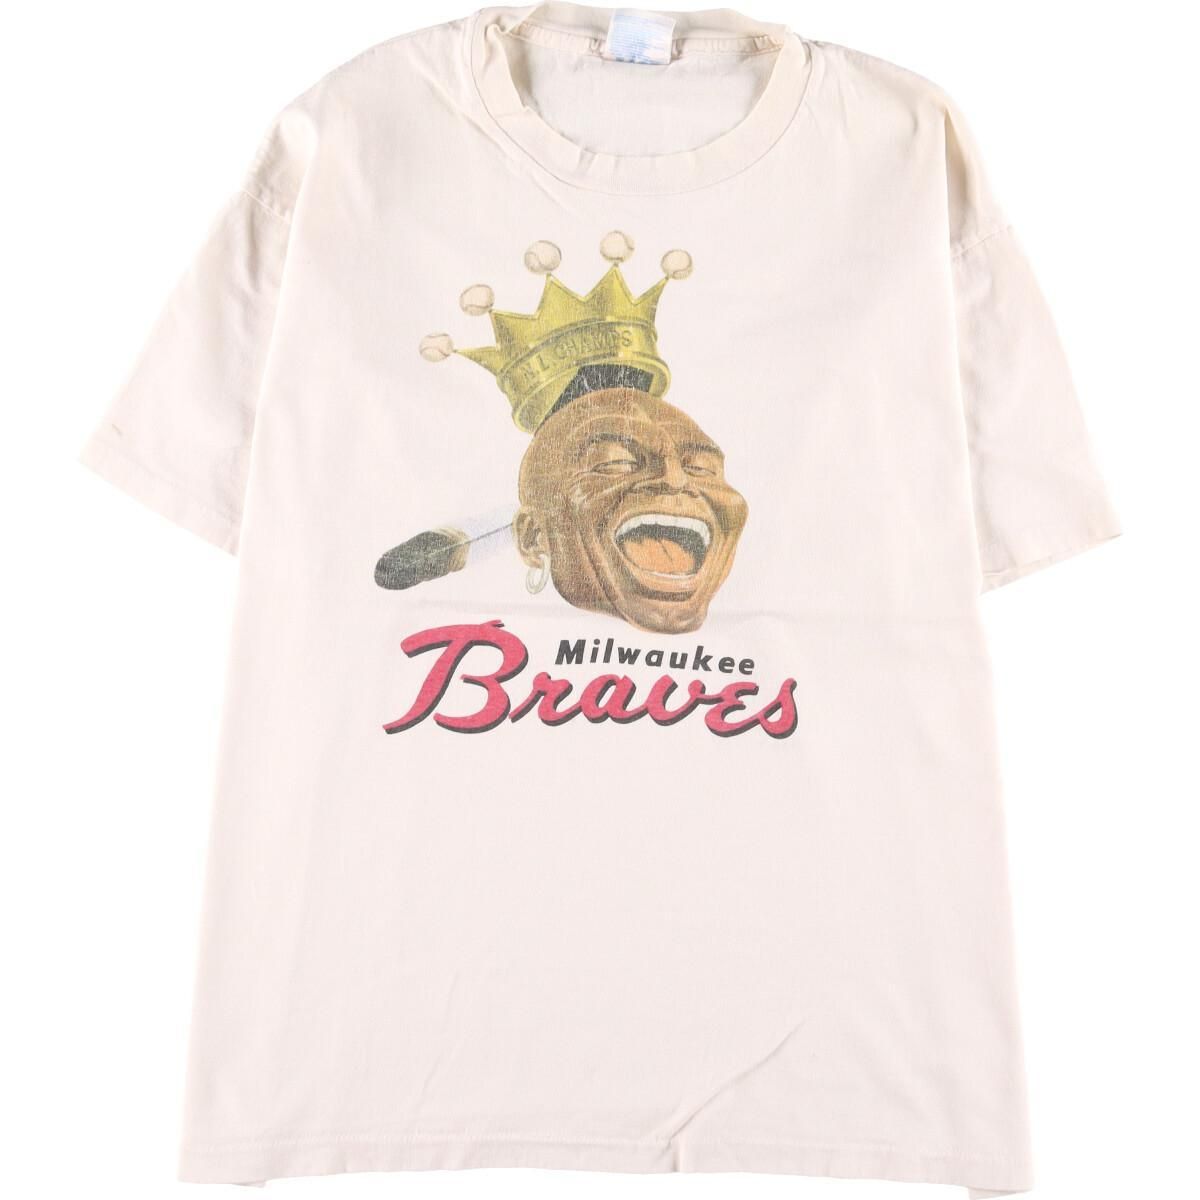 90年代 ヘインズ Hanes MLB ATLANTA BRAVES アトランタブレーブス スポーツプリントTシャツ USA製 メンズXL ヴィンテージ /eaa314896